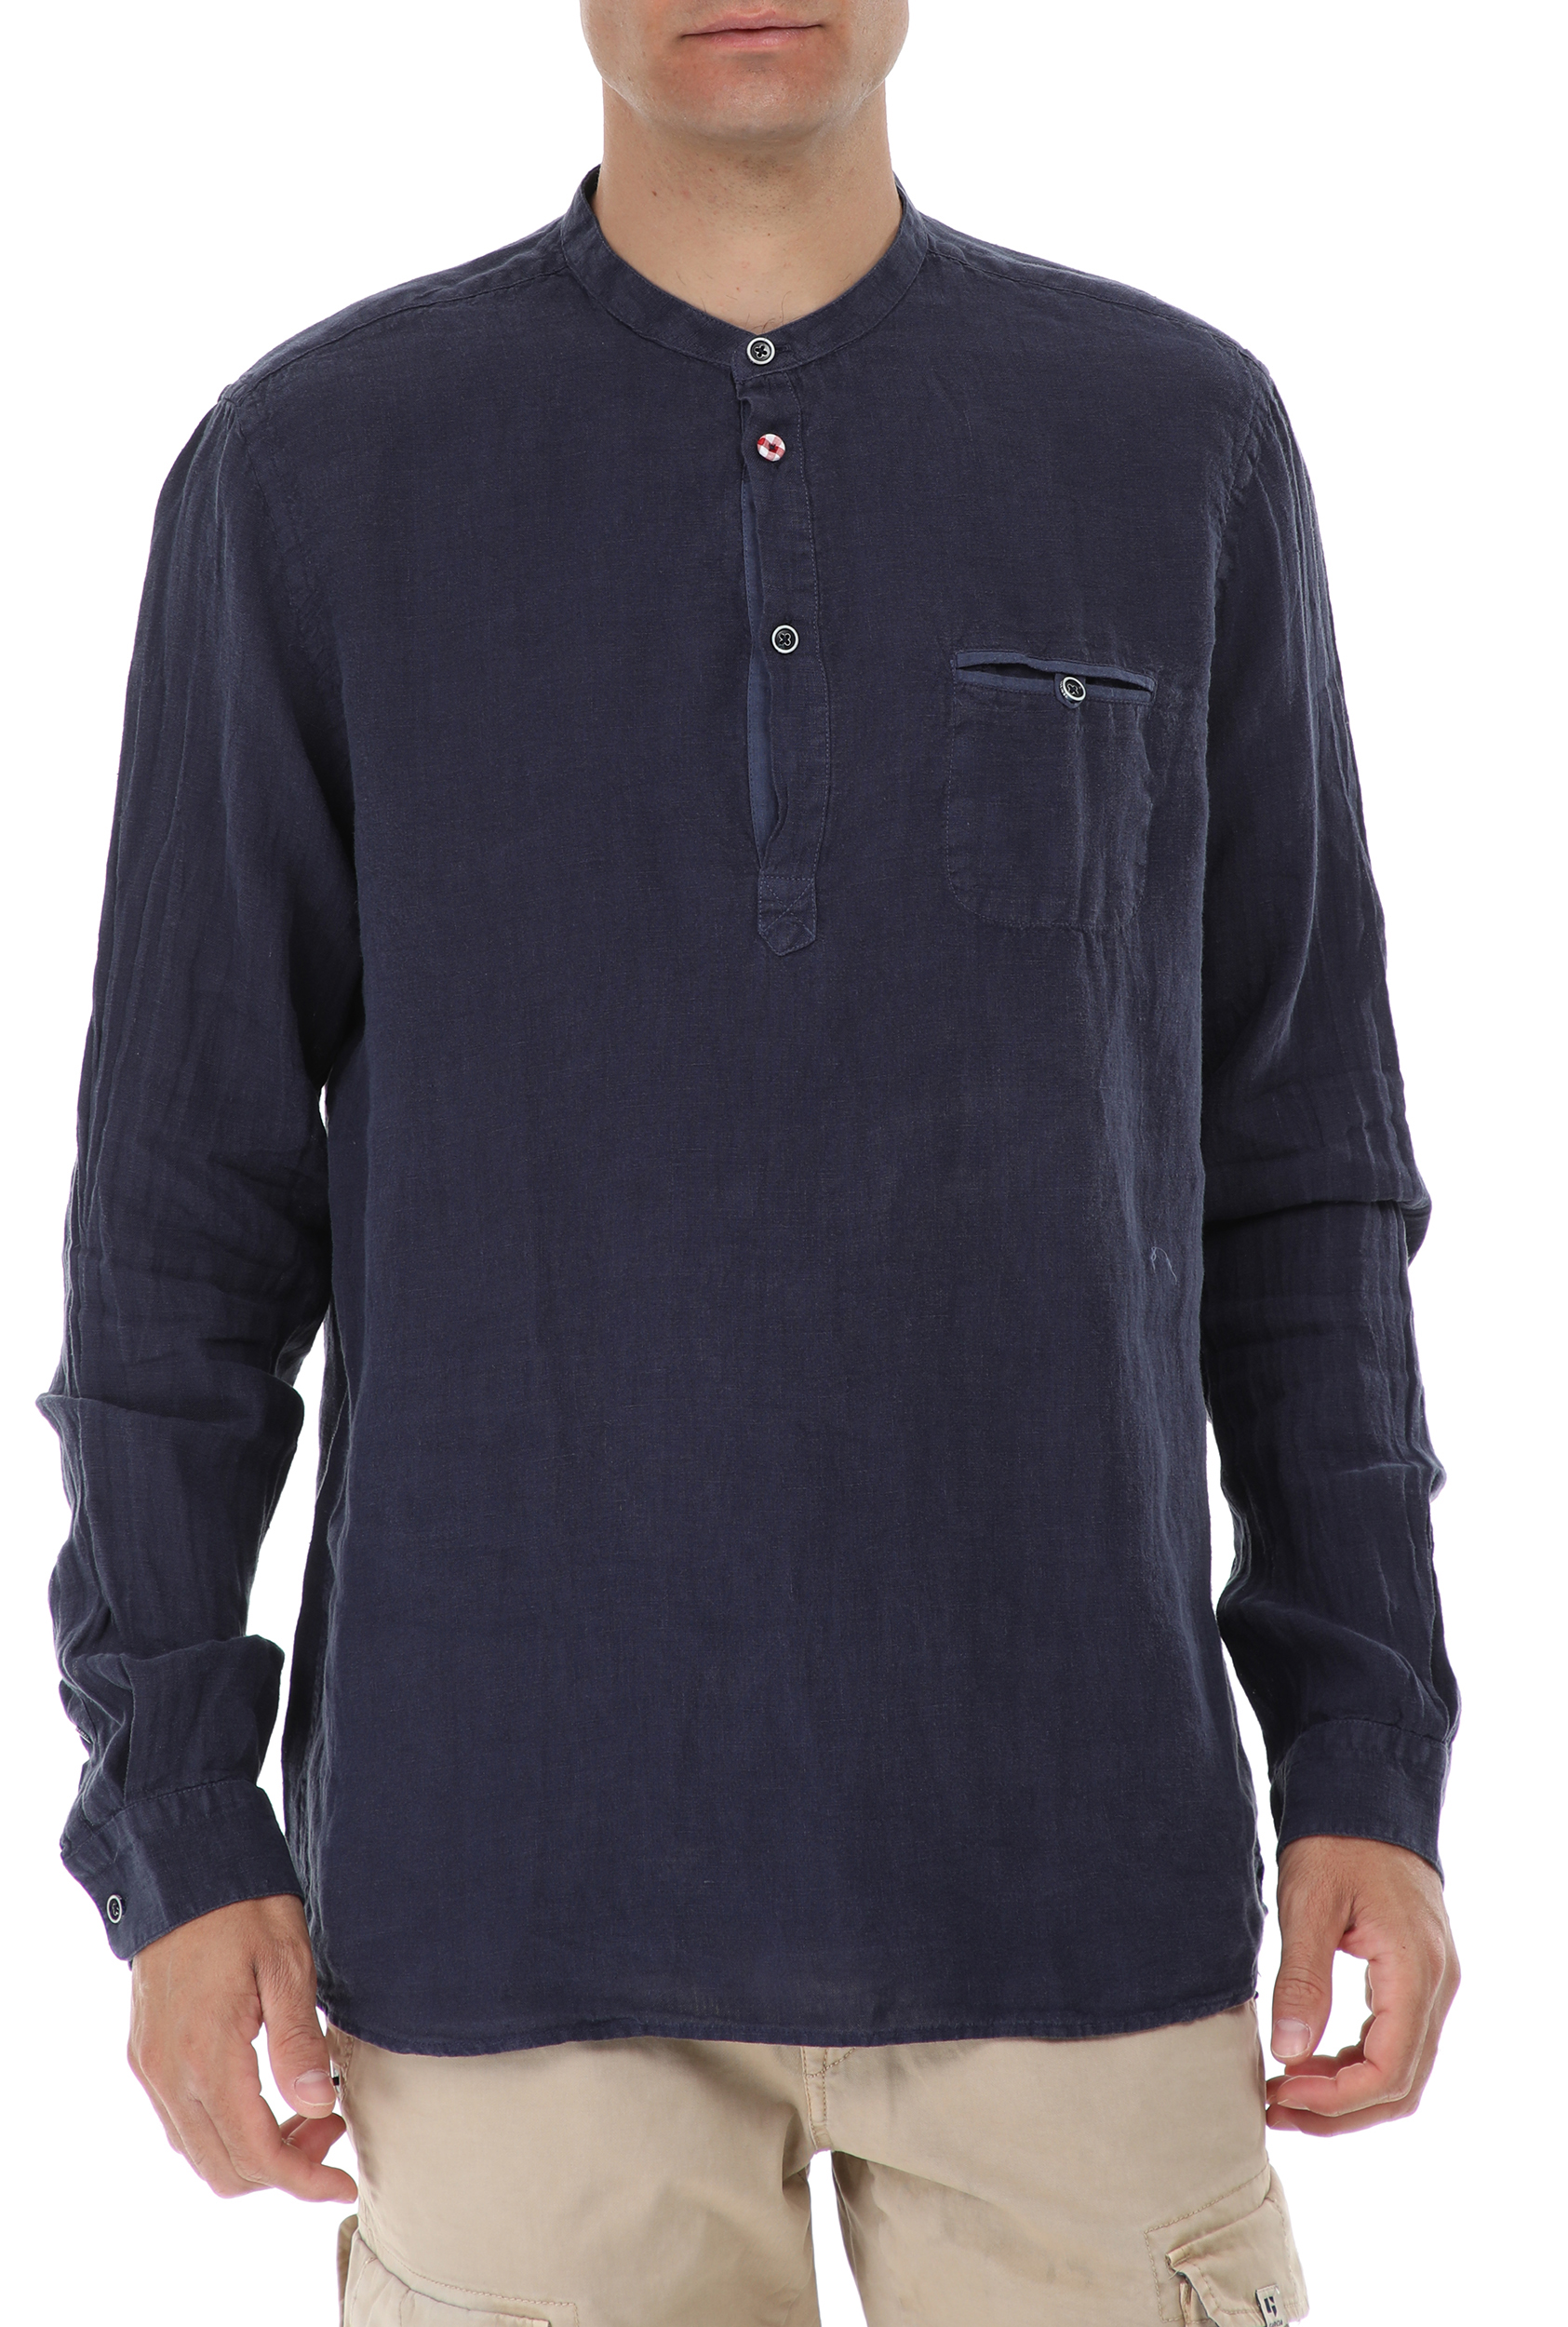 Ανδρικά/Ρούχα/Πουκάμισα/Μακρυμάνικα SSEINSE - Ανδρικό πουκάμισο SSEINSE CAMICIA SERAFINO μπλε